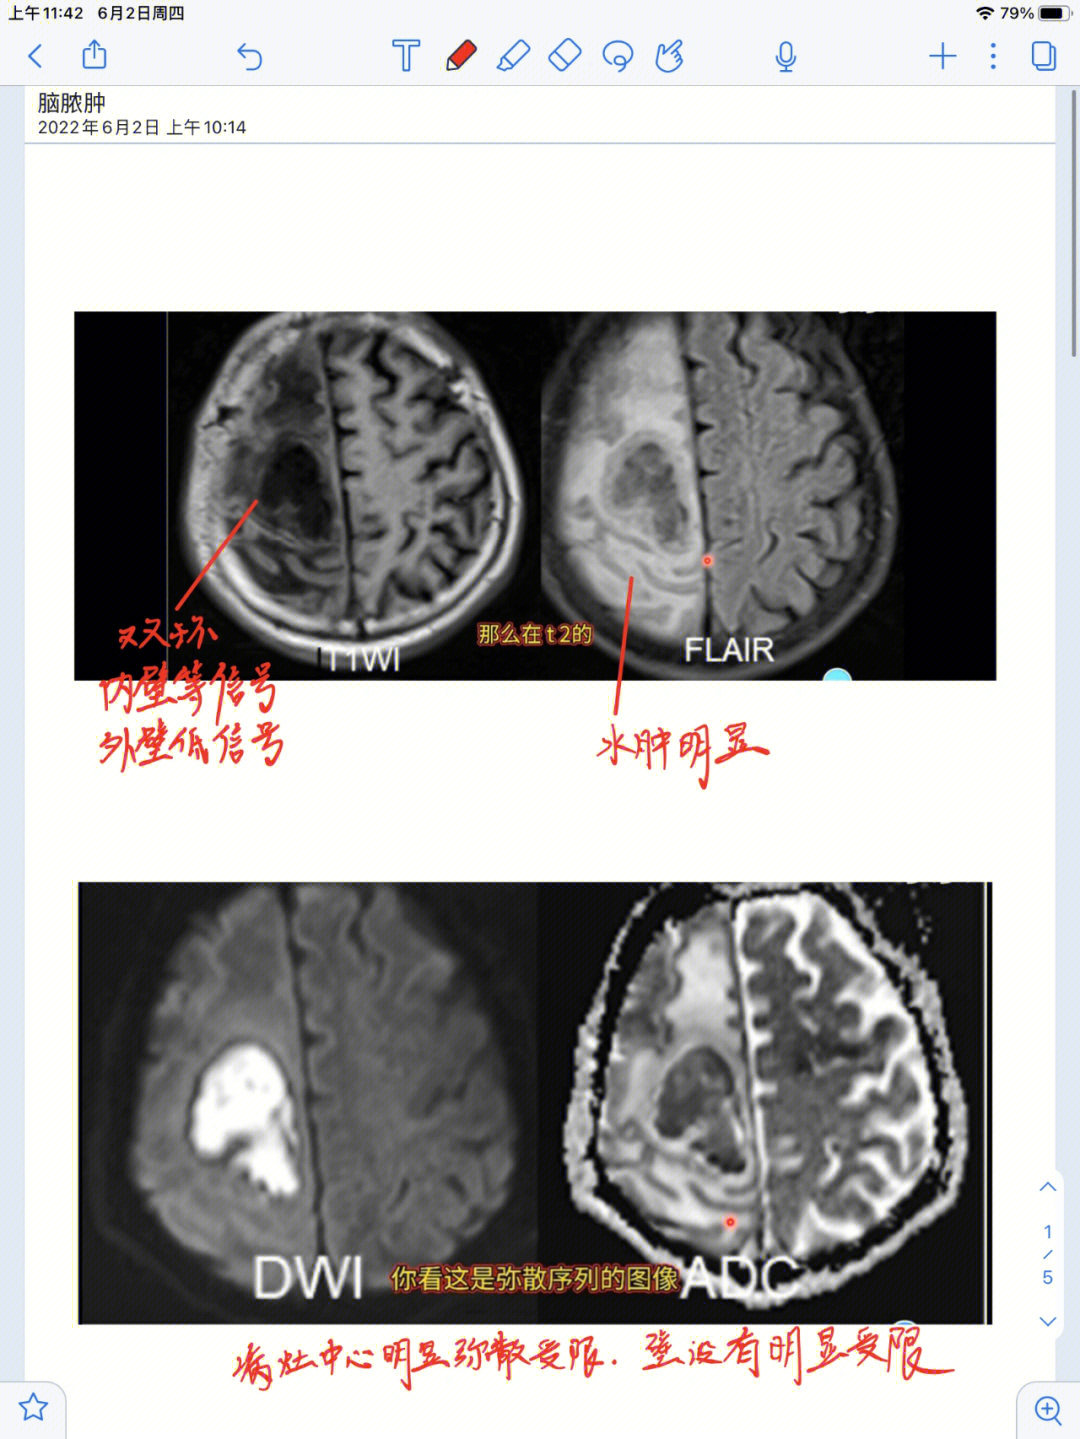 脑脓肿标本描述图片